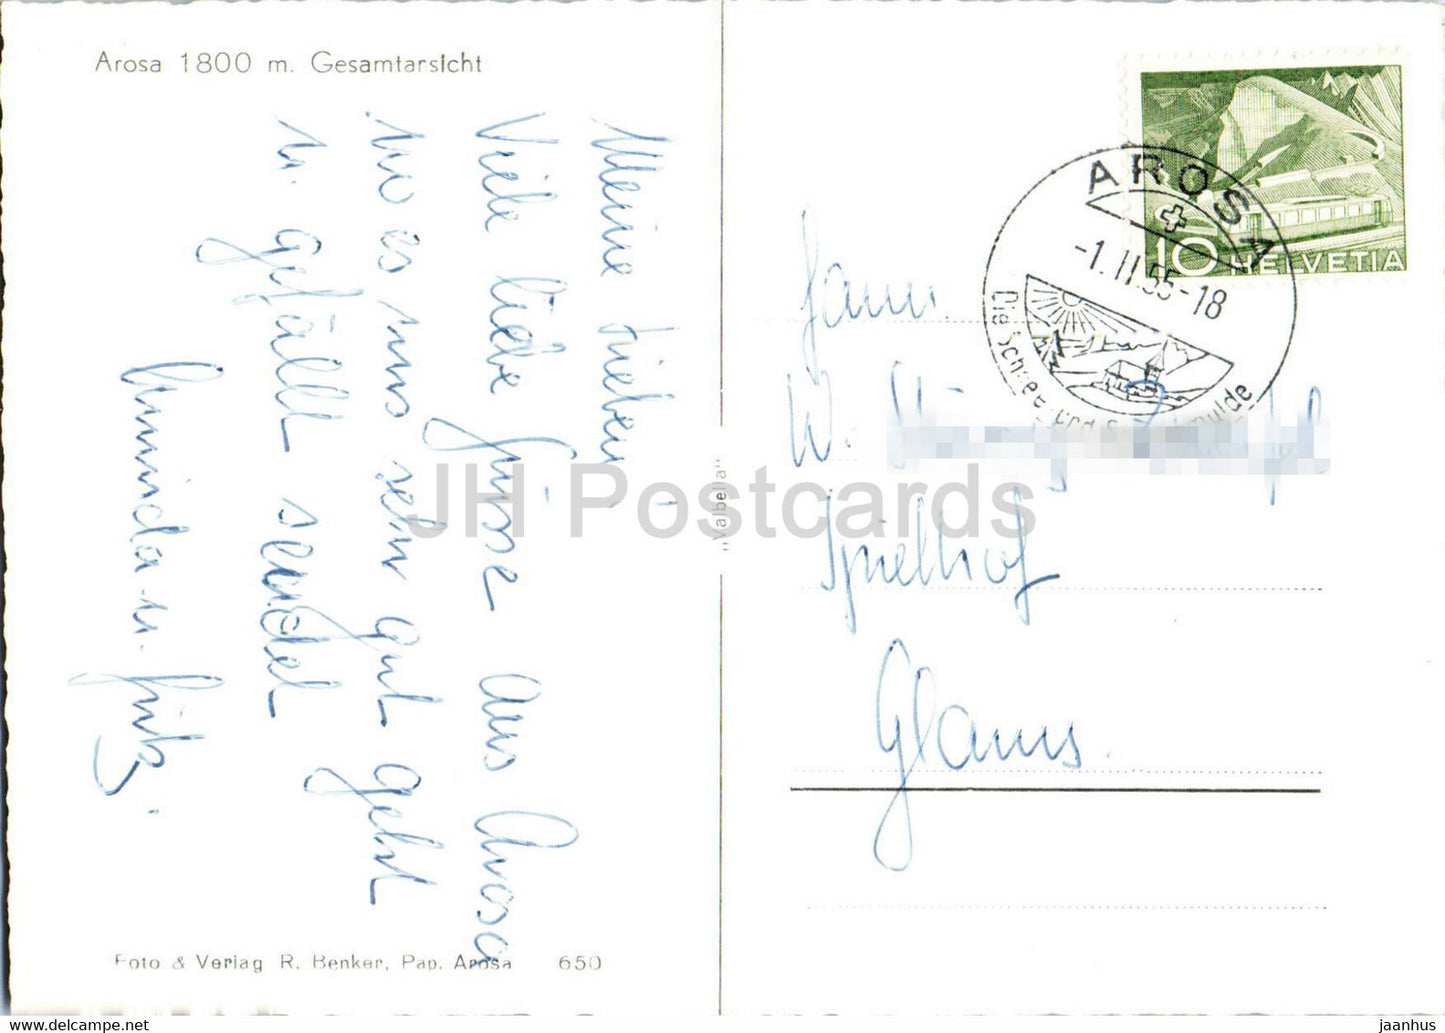 Arosa 1800 m - Gesamtansicht - 650 - carte postale ancienne - 1955 - Suisse - utilisé